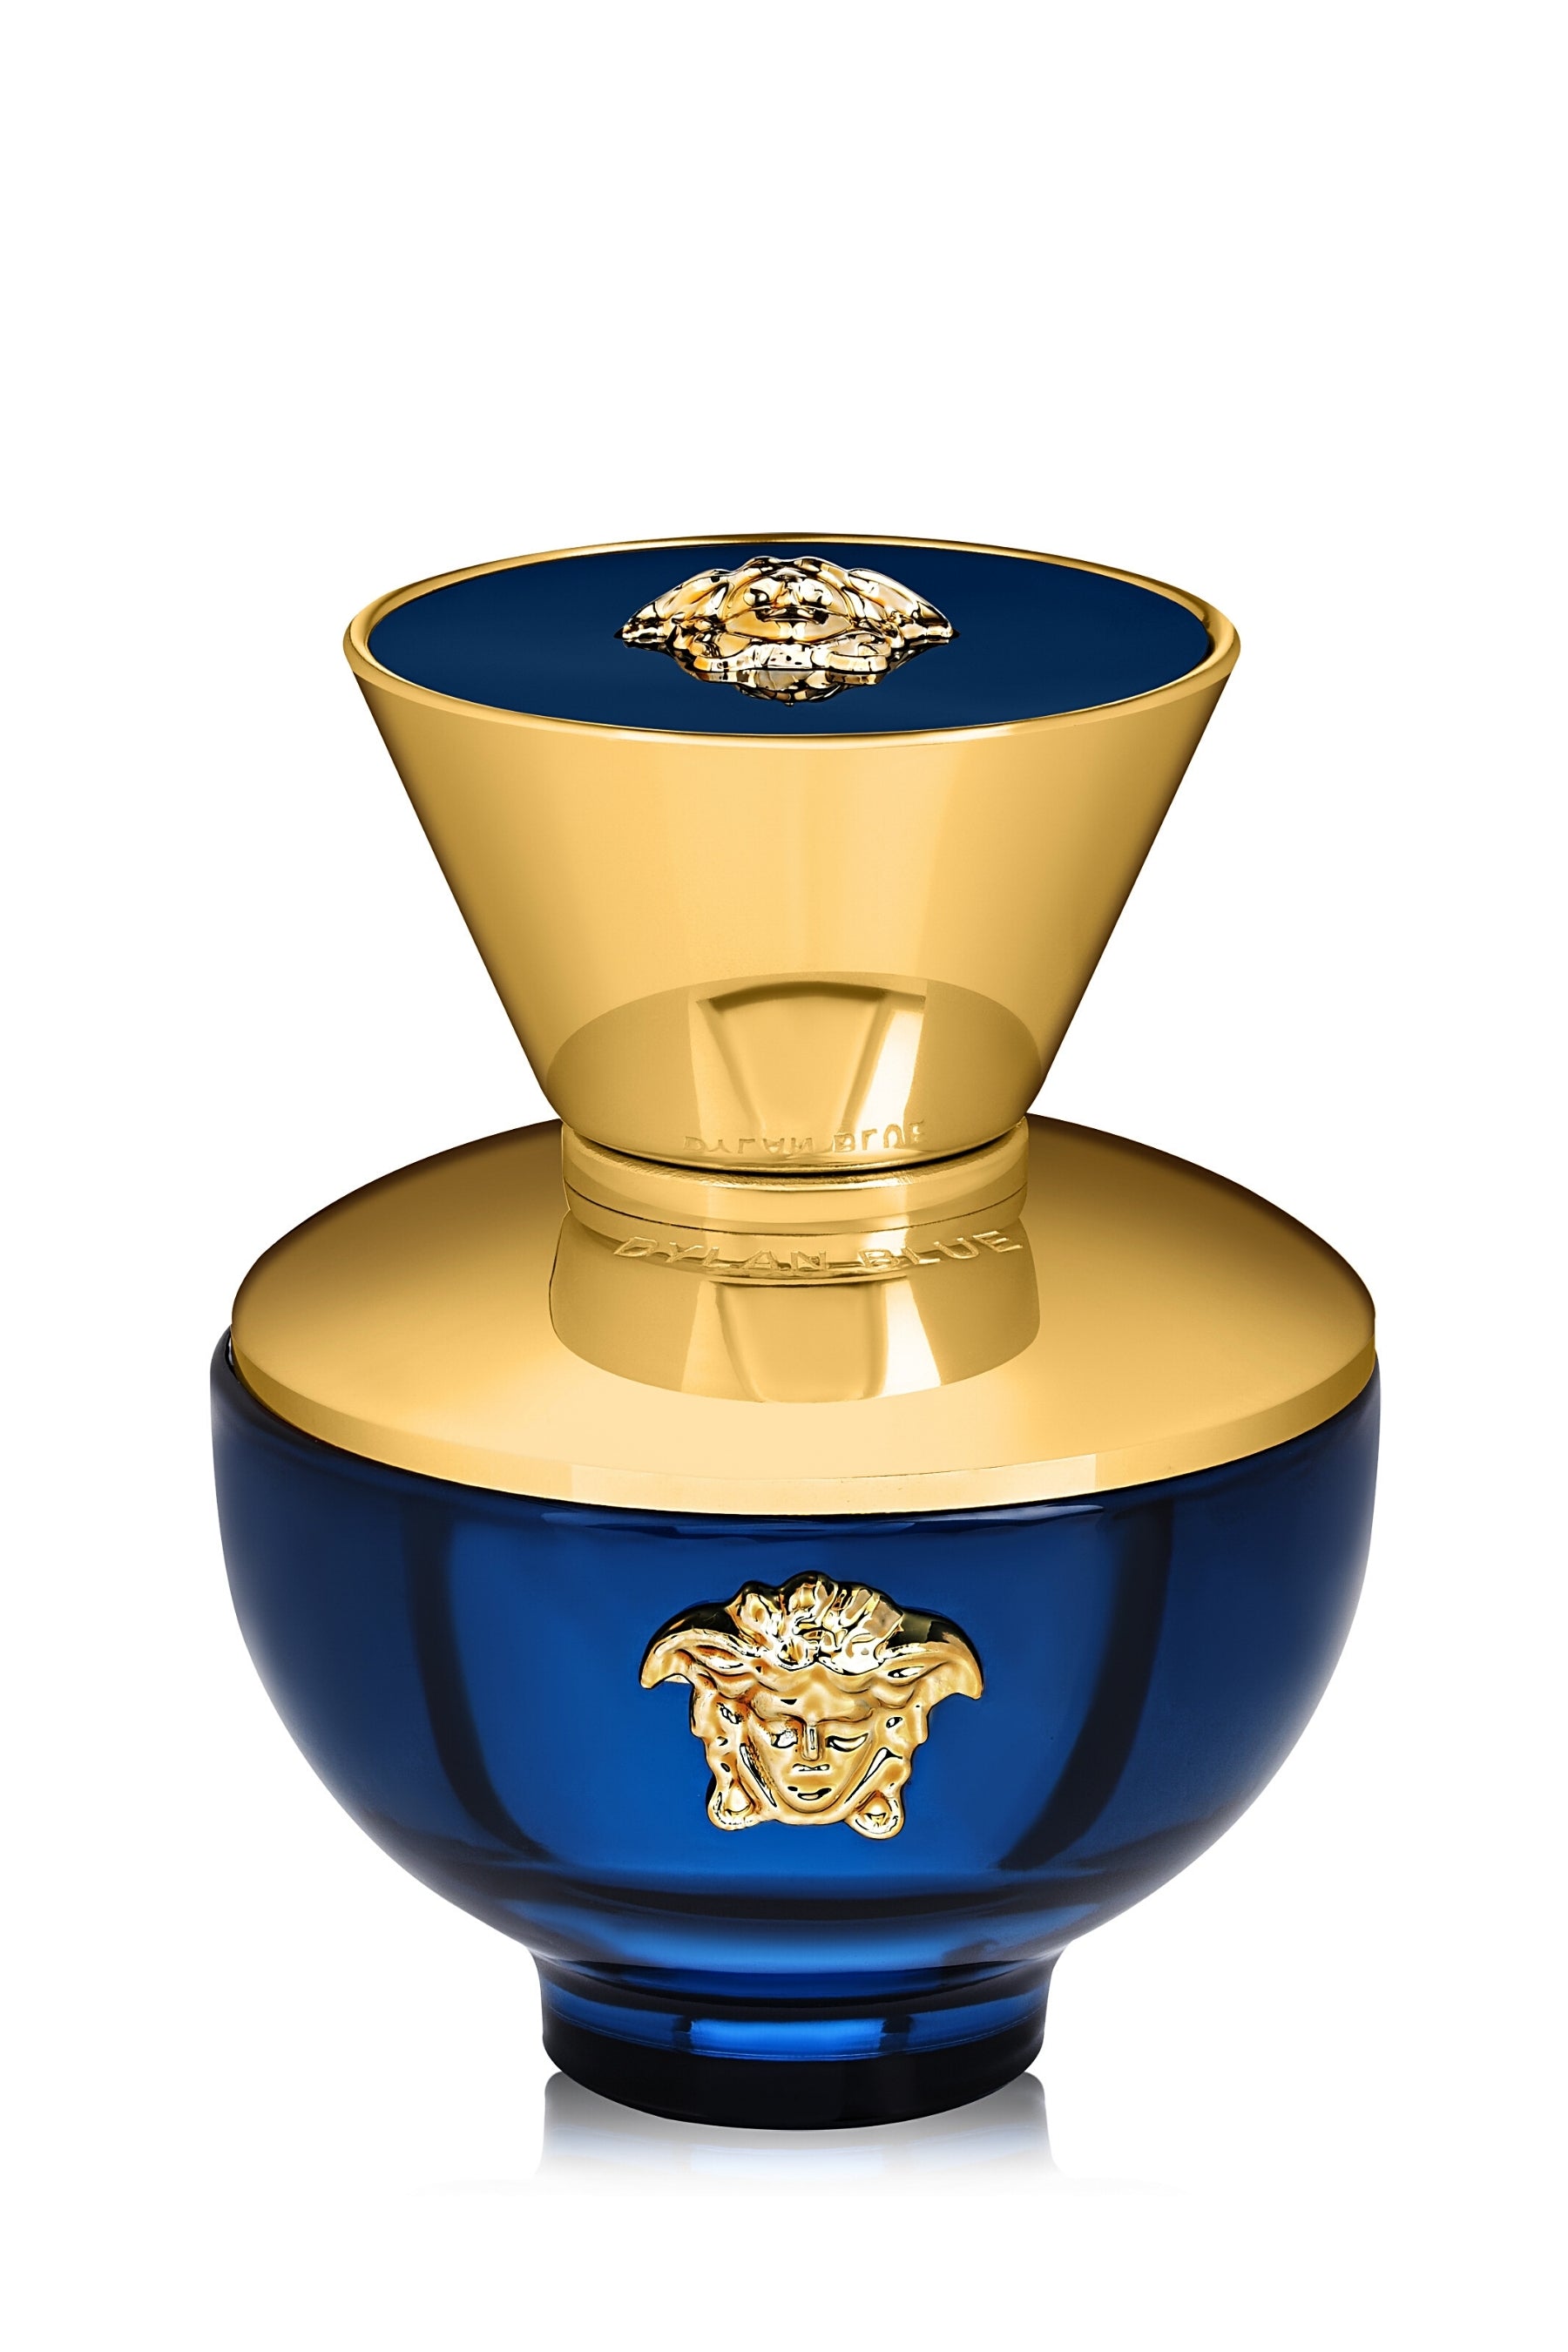 Versace | Dylan Blue Eau de Parfum